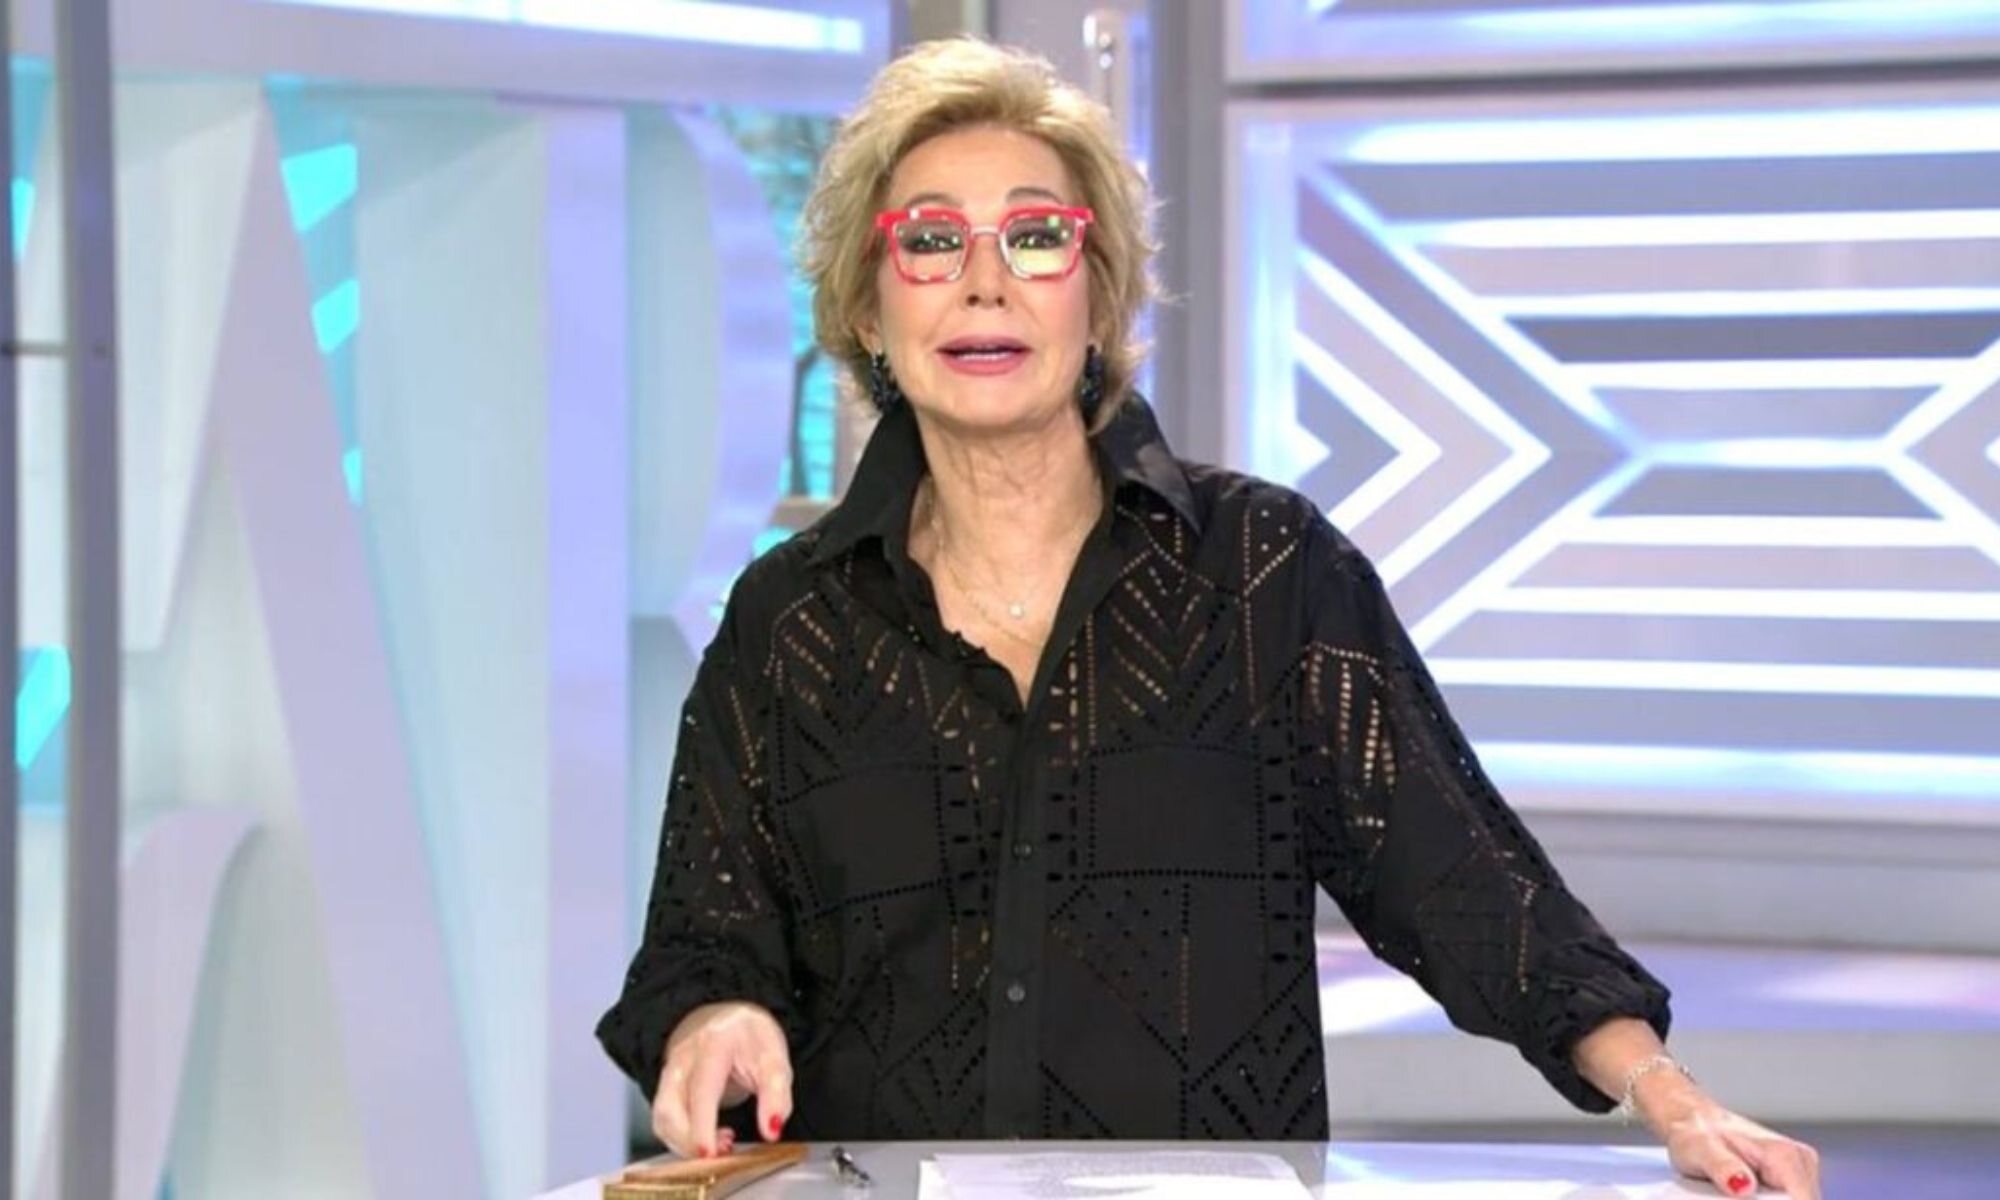 Ana Rosa Quintana en 'El programa de Ana Rosa'